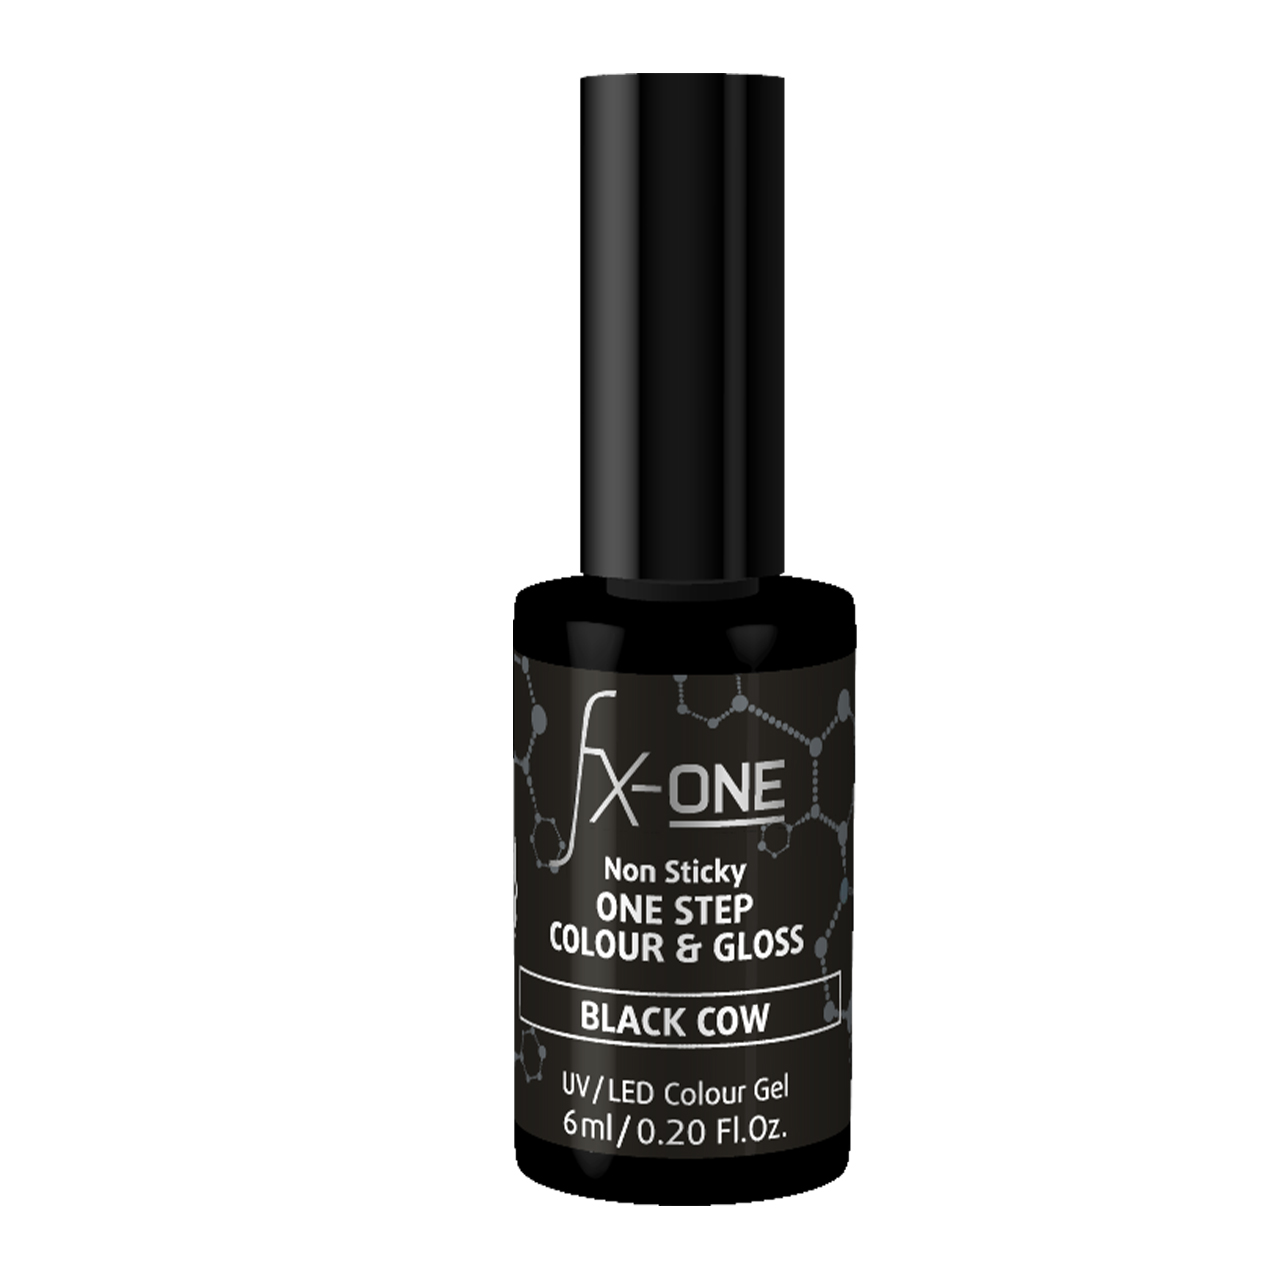 FX-ONE Colour & Gloss Black Cow 6ml